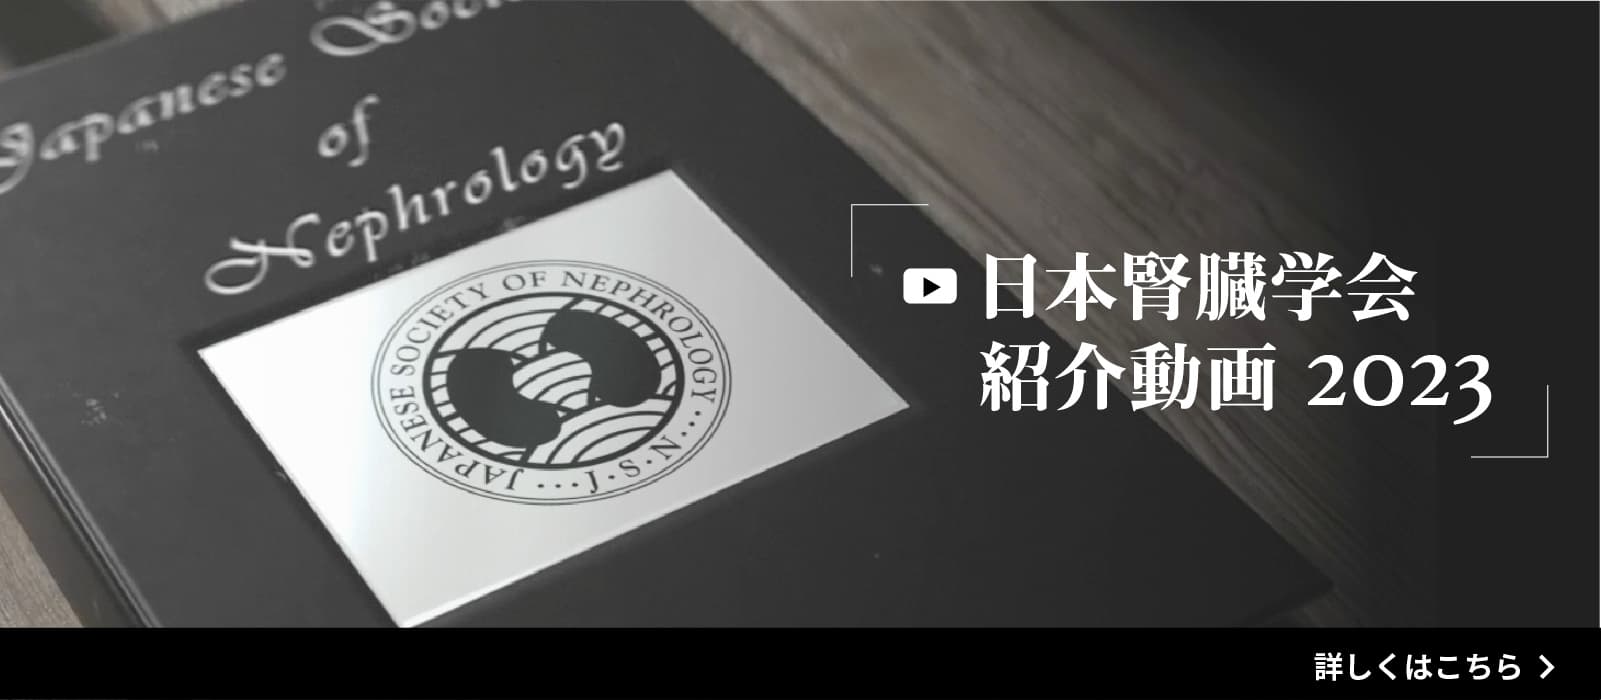 日本腎臓学会紹介動画